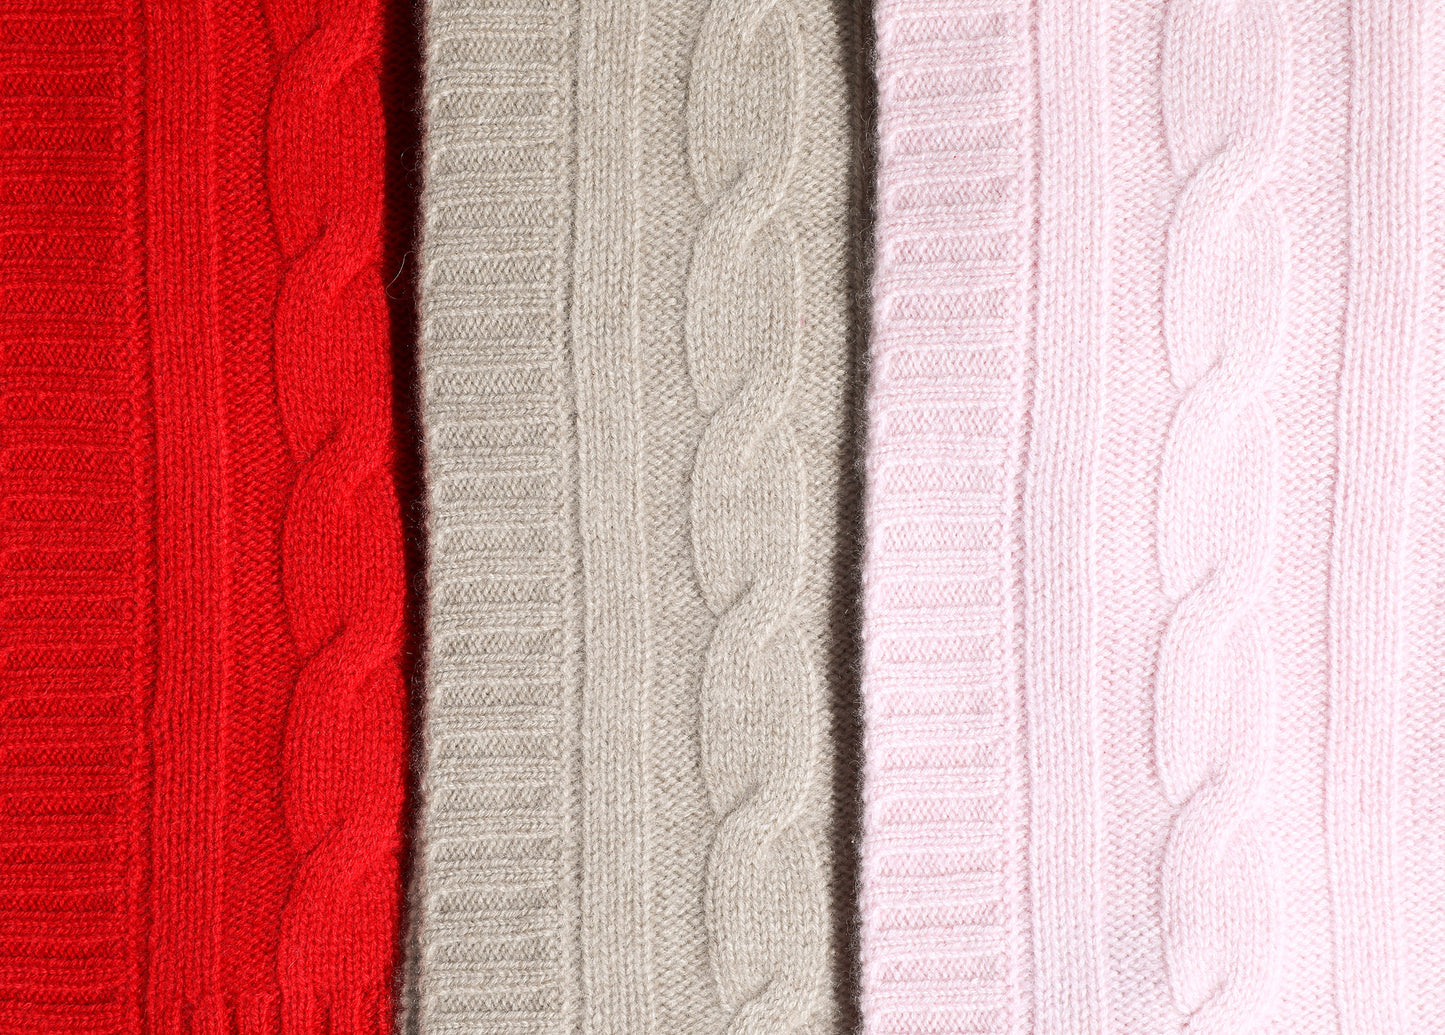 Cashmere Blanket - Red & Pink - Dog Blanket - 2 Color Options